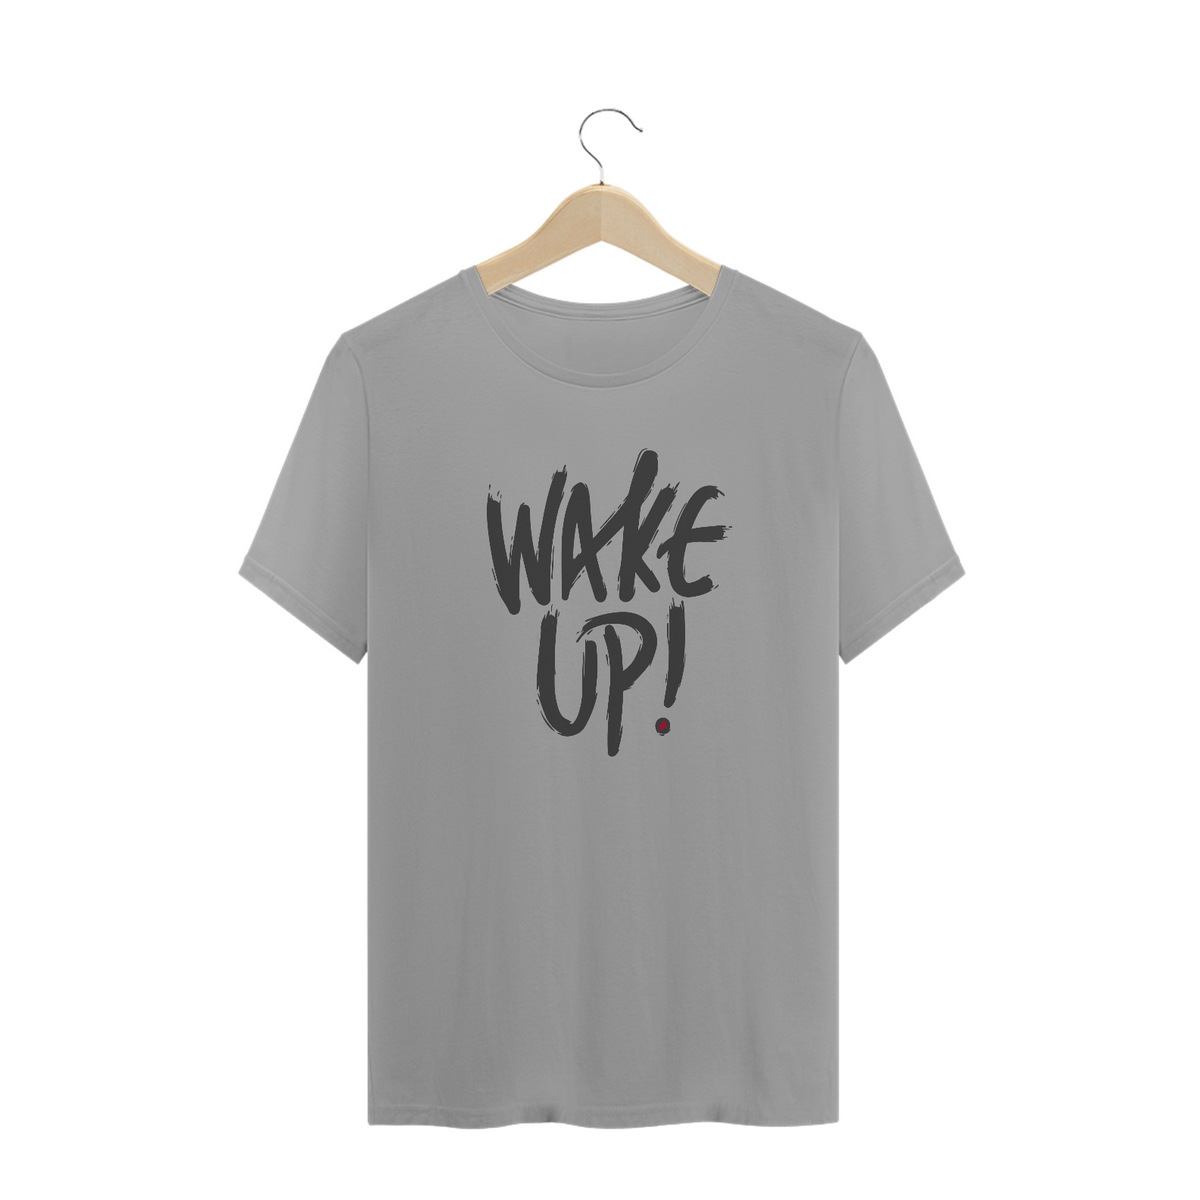 Nome do produto: Wake Up! - T-shirt